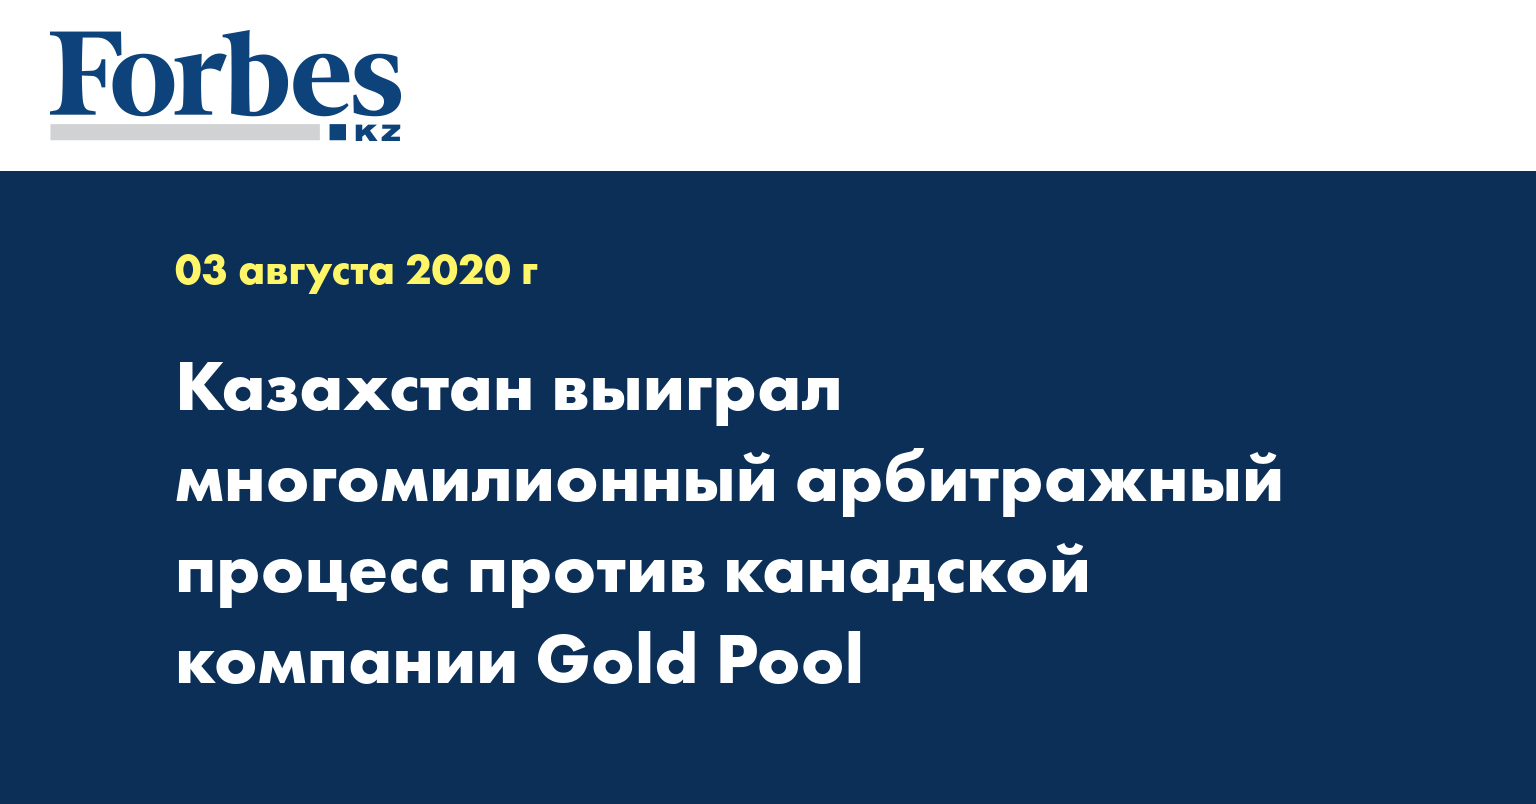  Казахстан выиграл многомилионный арбитражный процесс против канадской компании «Gold Pool»